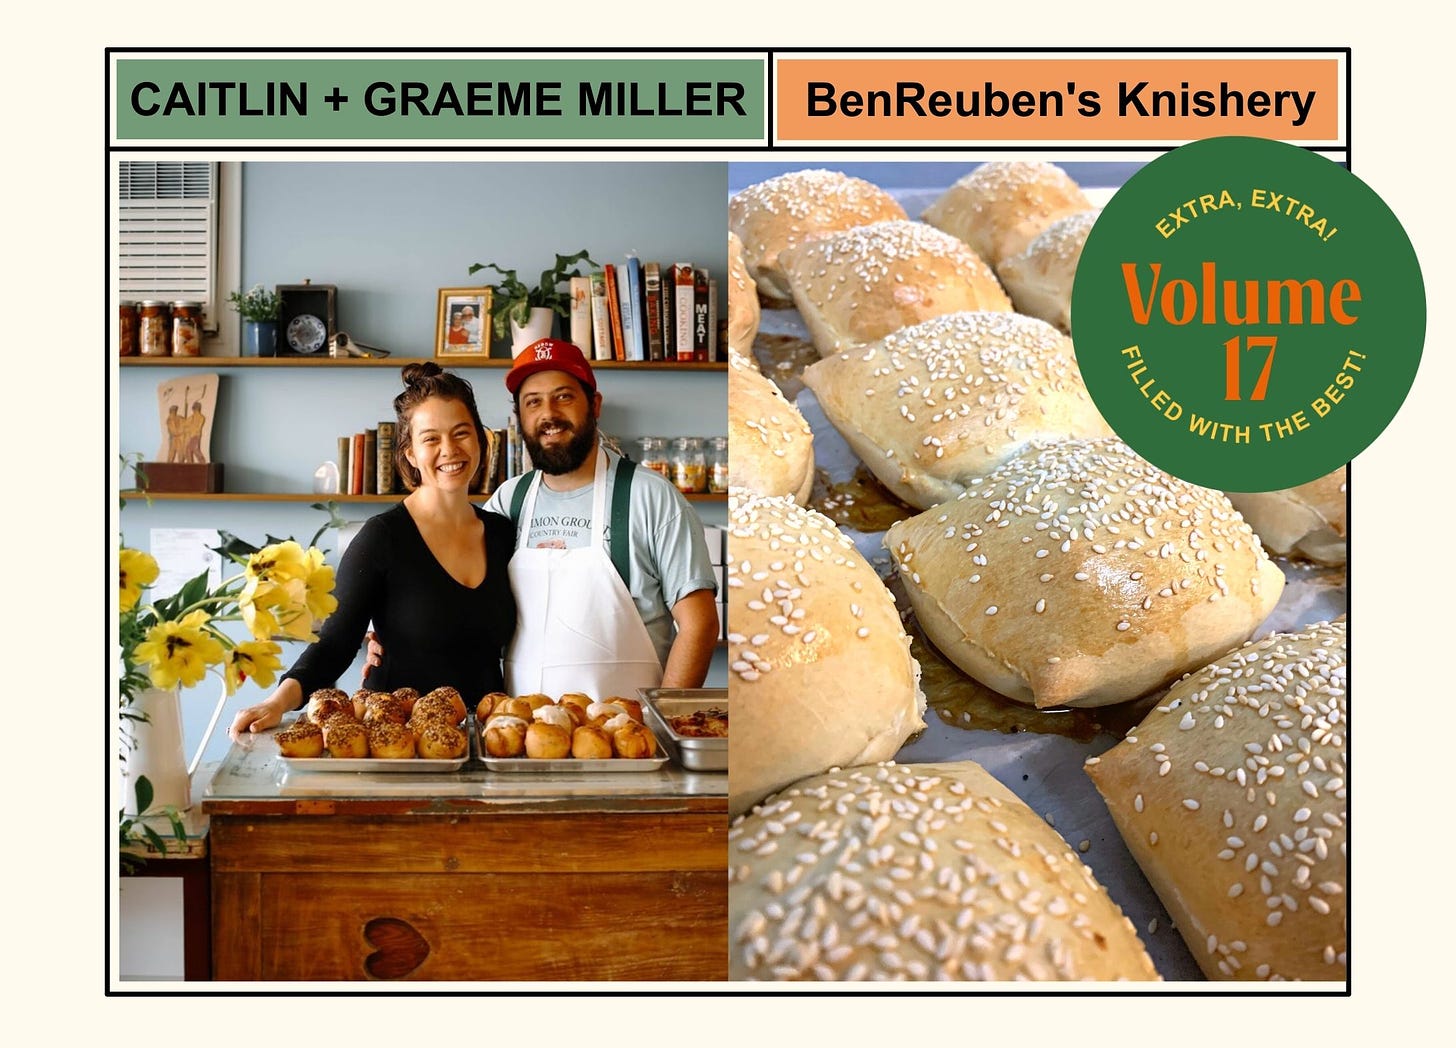 Caitlin + Grame Miller of BenReuben's Knishery